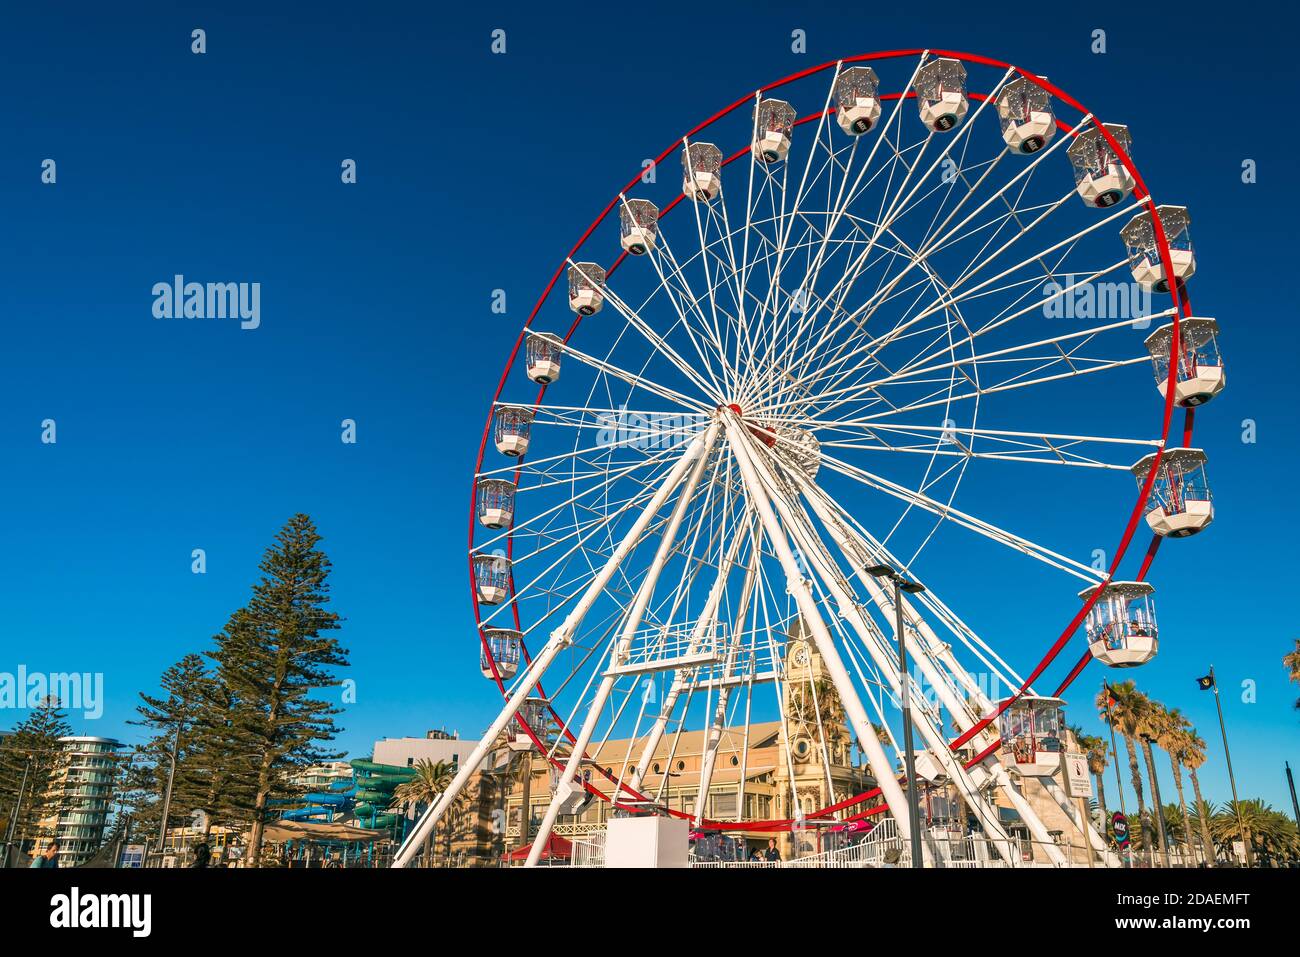 Adélaïde, Australie méridionale - 12 janvier 2019 : grande roue de Glenelg Mix102.3 vue depuis la place Moseley par une belle journée d'été Banque D'Images